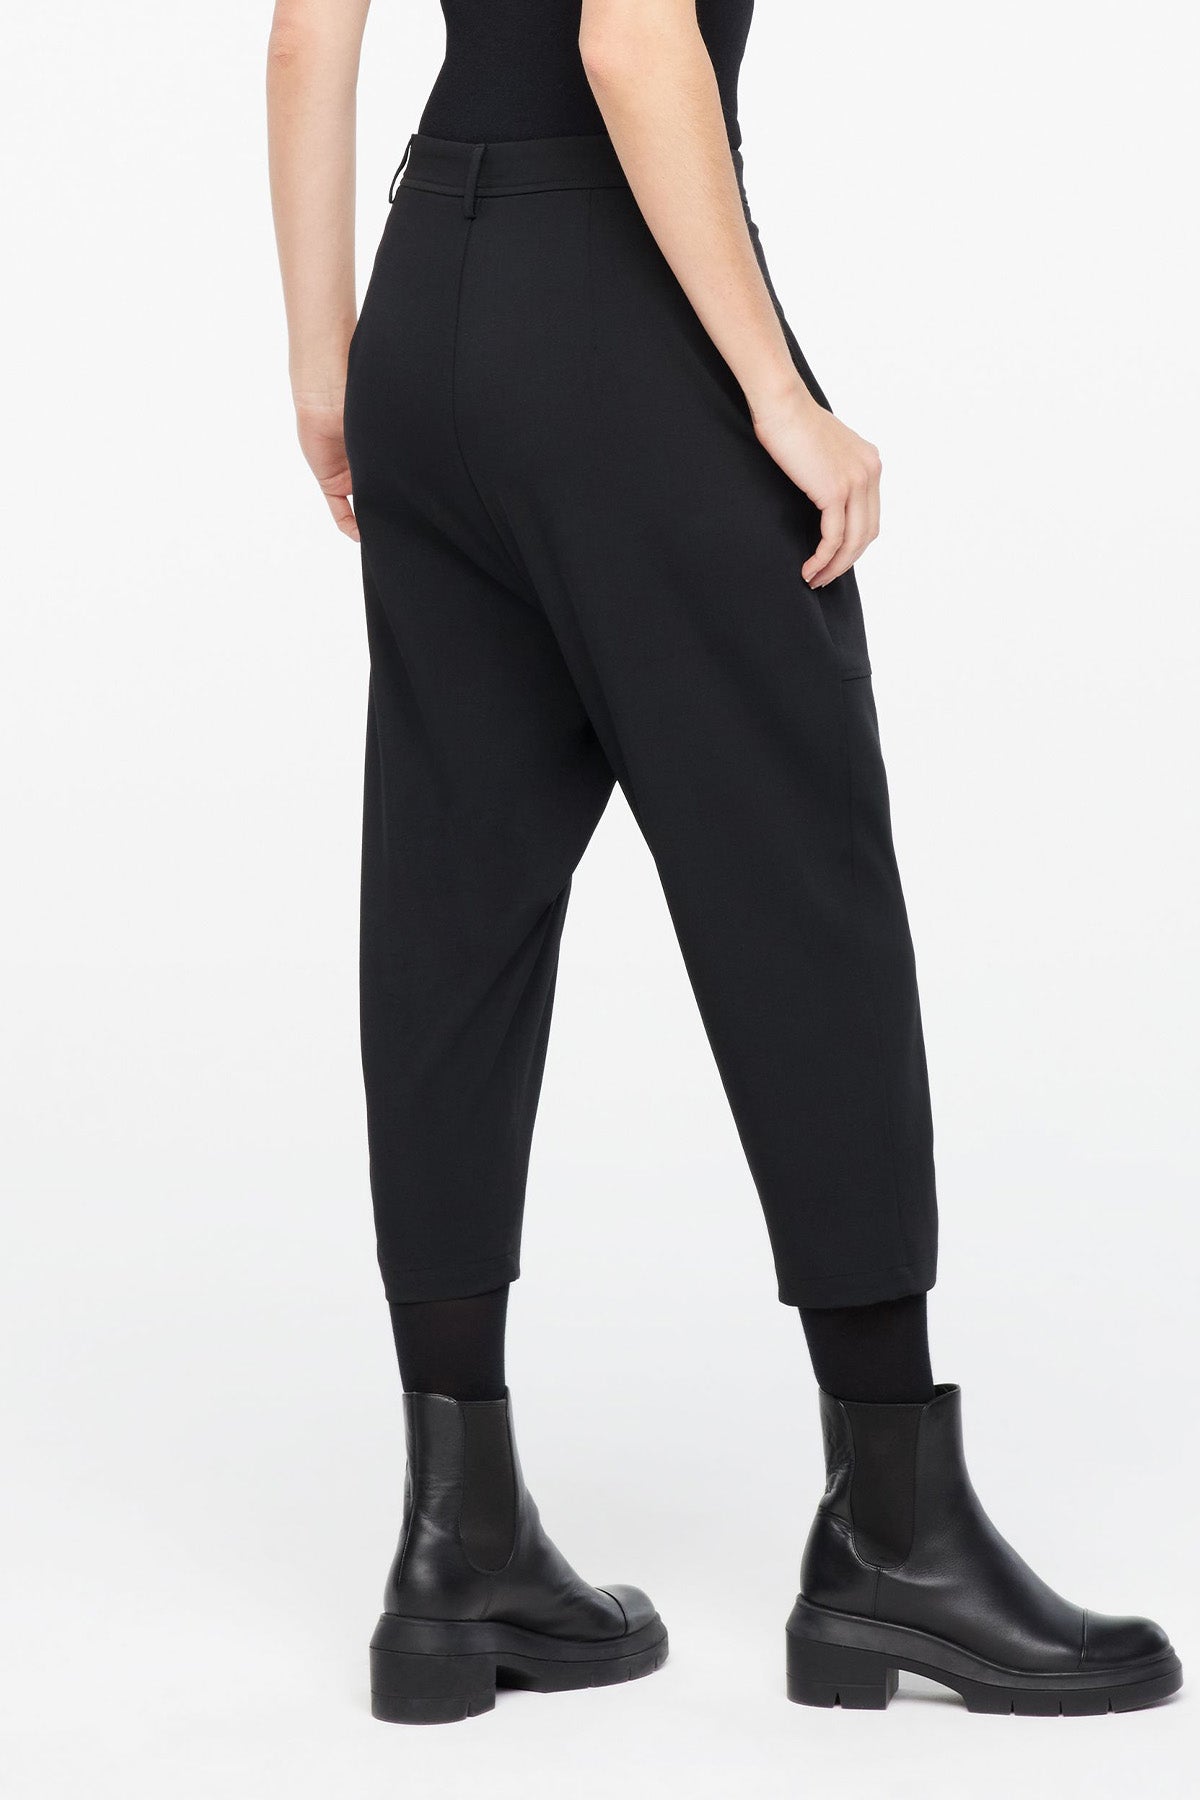 Sarah Pacini Crop Streç Yün Pantolon-Libas Trendy Fashion Store